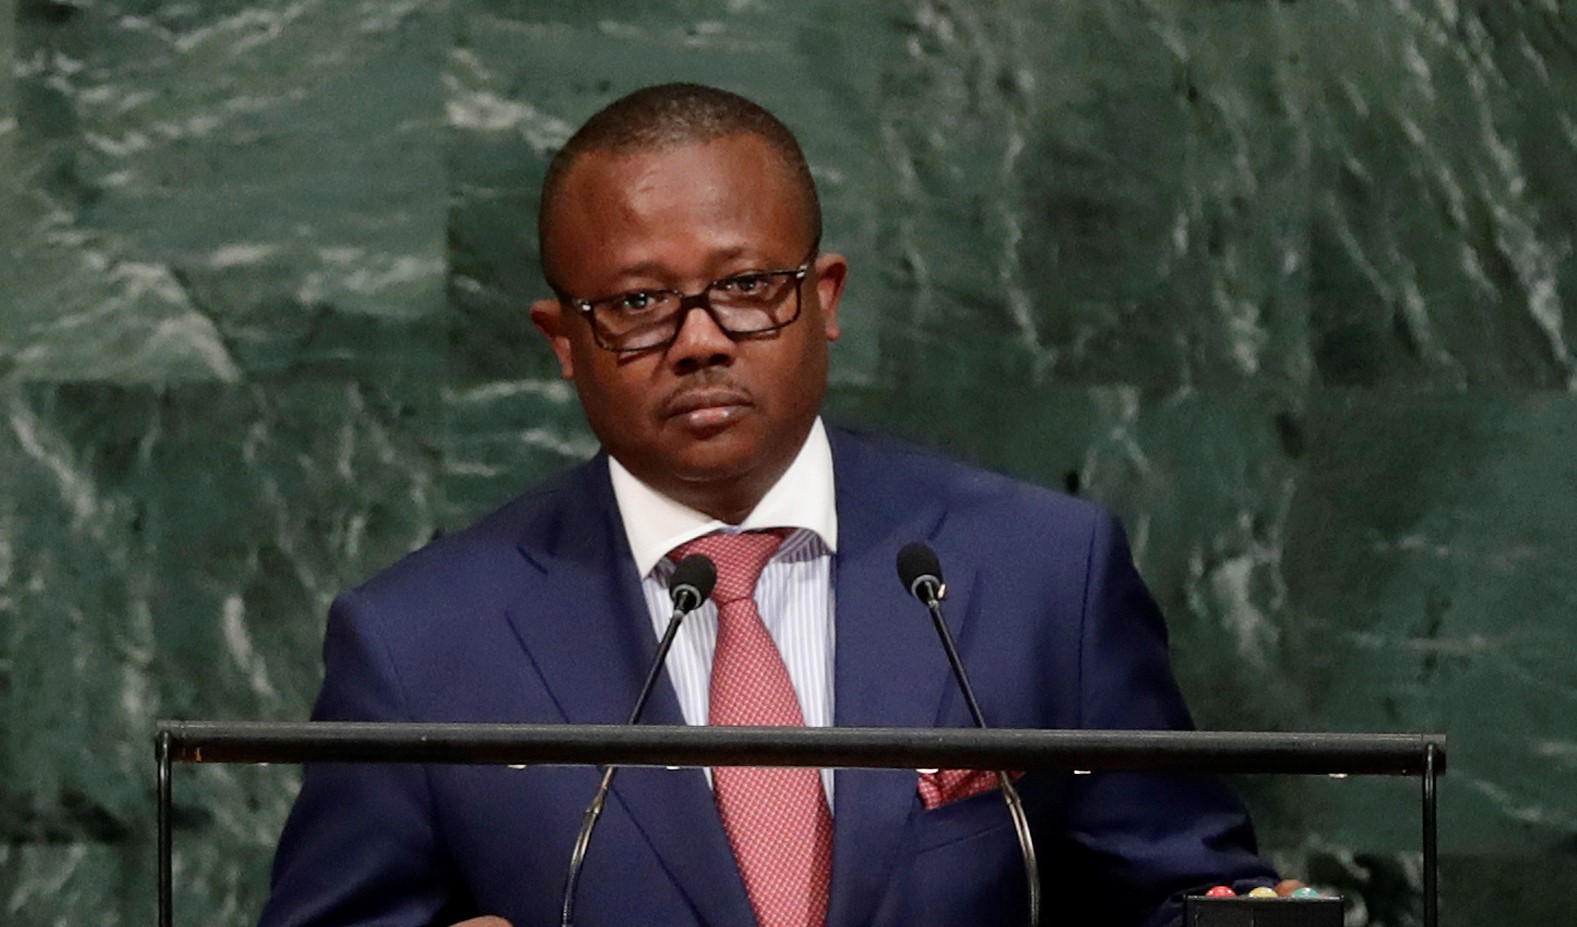 Guinée : Le porte-parole de la Présidence annihile Umaro Sissoco Embalo après sa dernière sortie, « On n’est pas dans une émission de guignol ou de téléréalité »